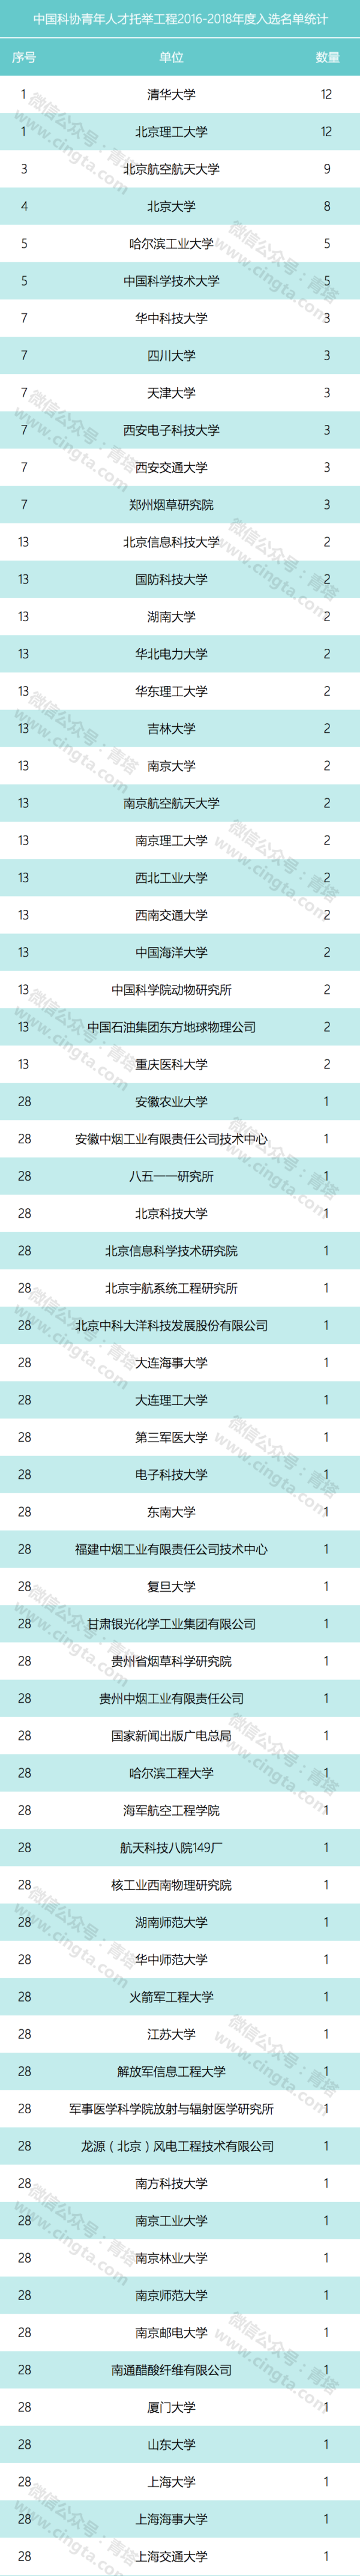 中国科协发布青年人才托举工程当选名单（2016